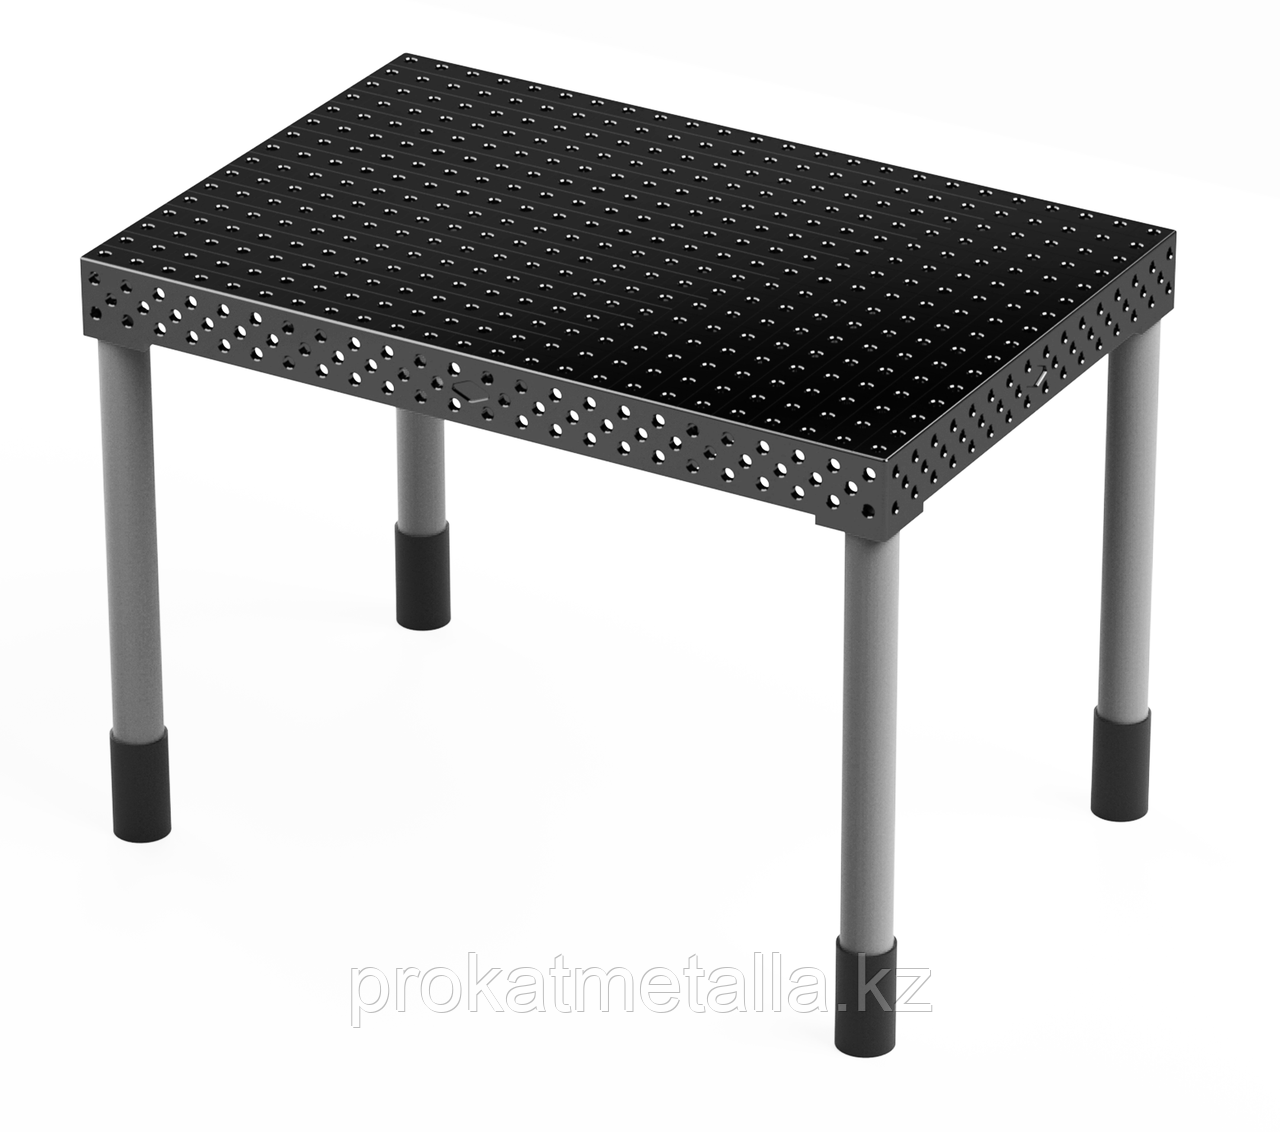 Сварочный стол "Лайт" 2950х1450х150 (шаг 100 мм)